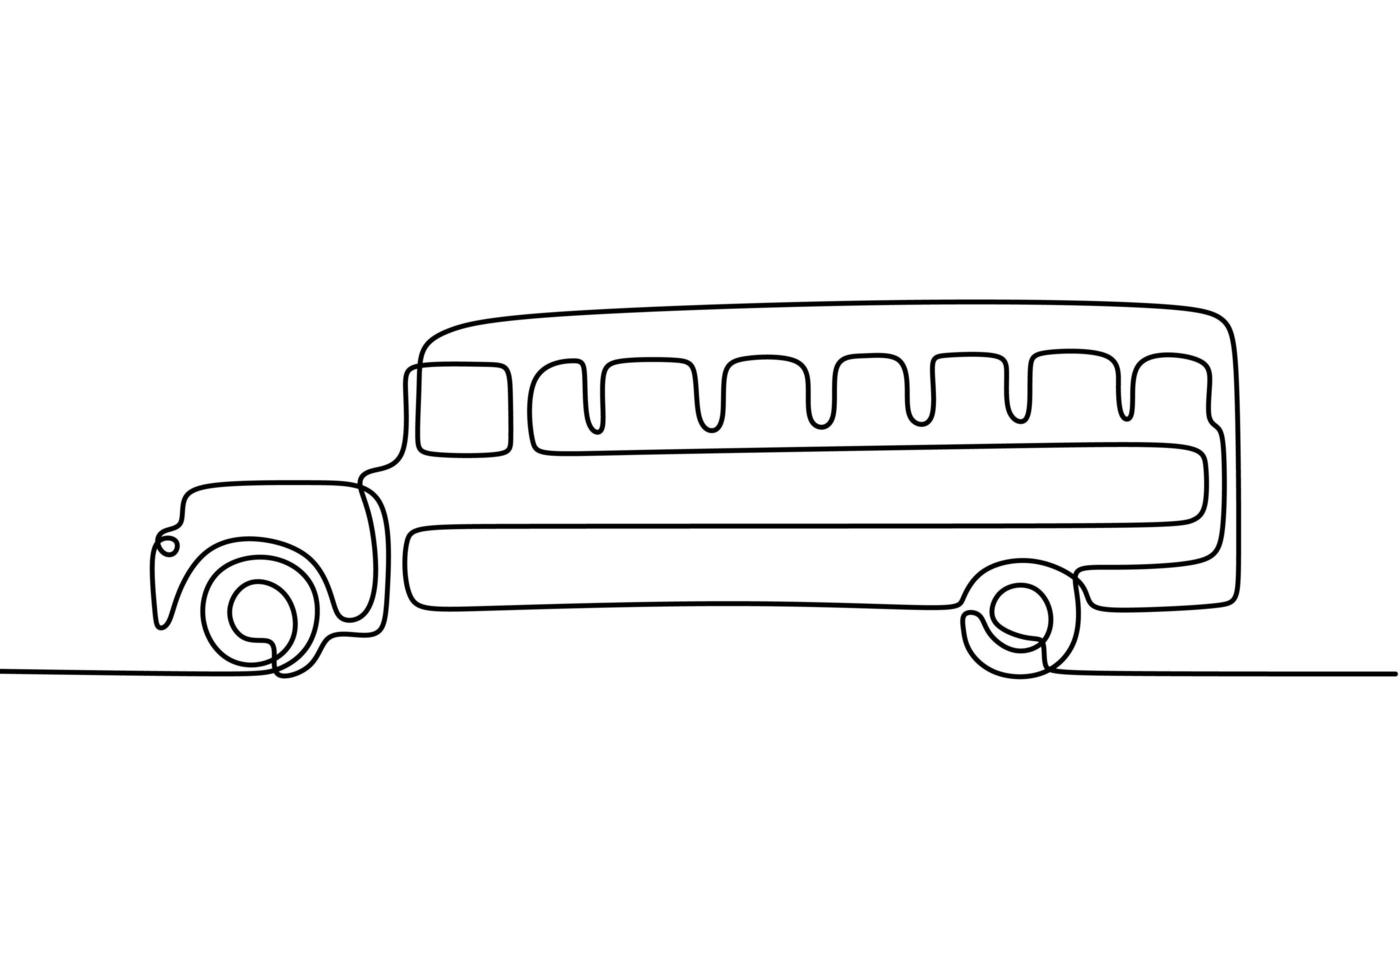 skolbuss, en linje ritning. kontinuerlig enkelhand ritad av fordon, som regelbundet används för att transportera studenter. vektor